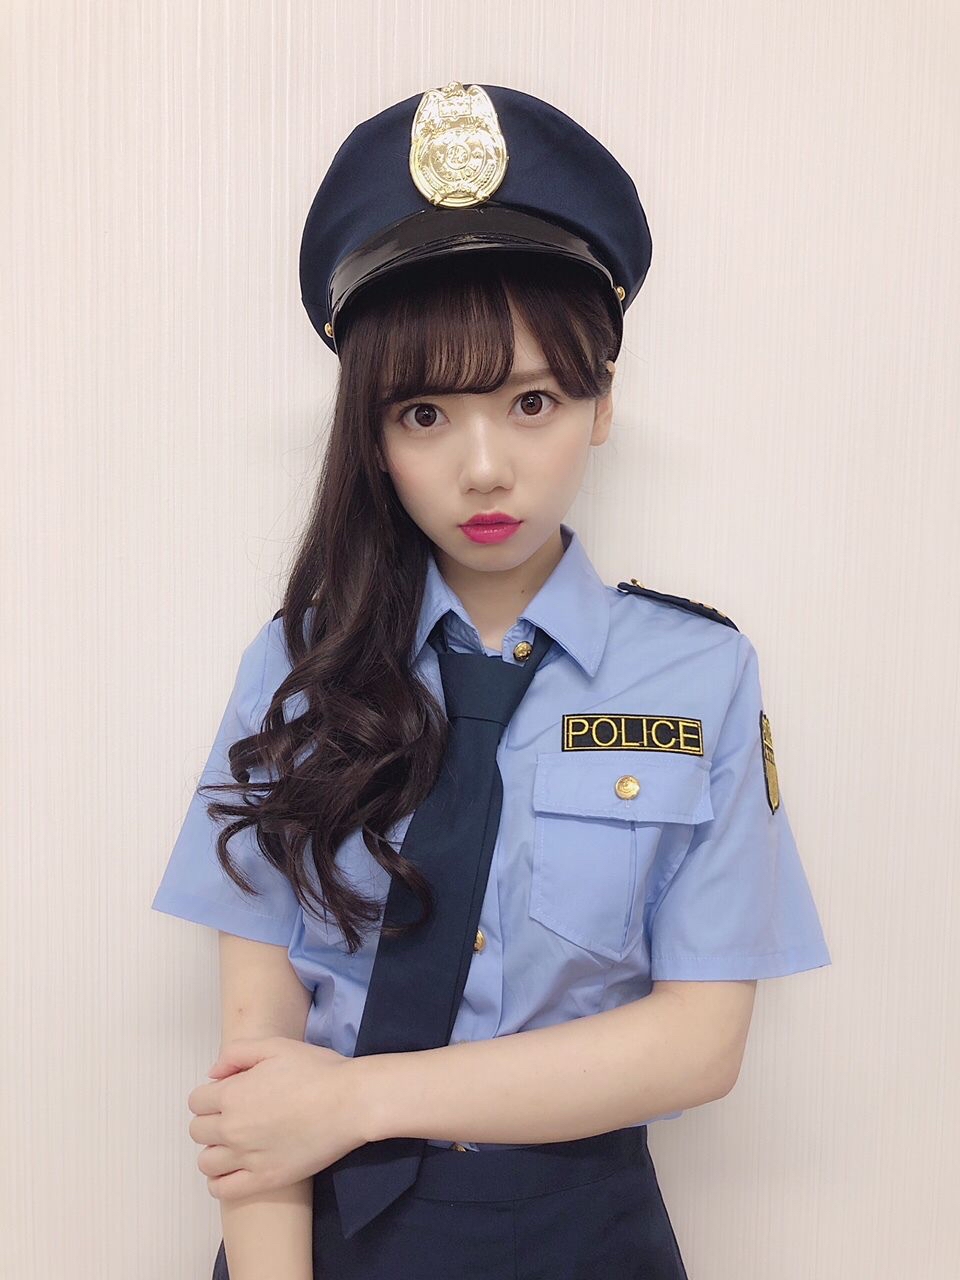 【画像】この婦警さんに「もう、いい加減にしないと逮捕しちゃいますよ？」て言われたらどうする？ｗ